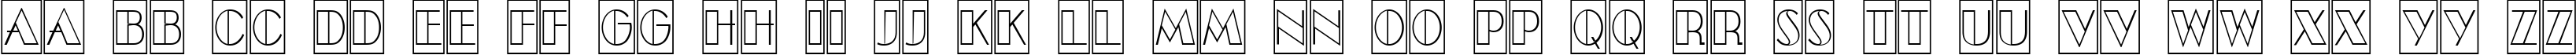 Пример написания английского алфавита шрифтом a_BentTitulCmOtlNr